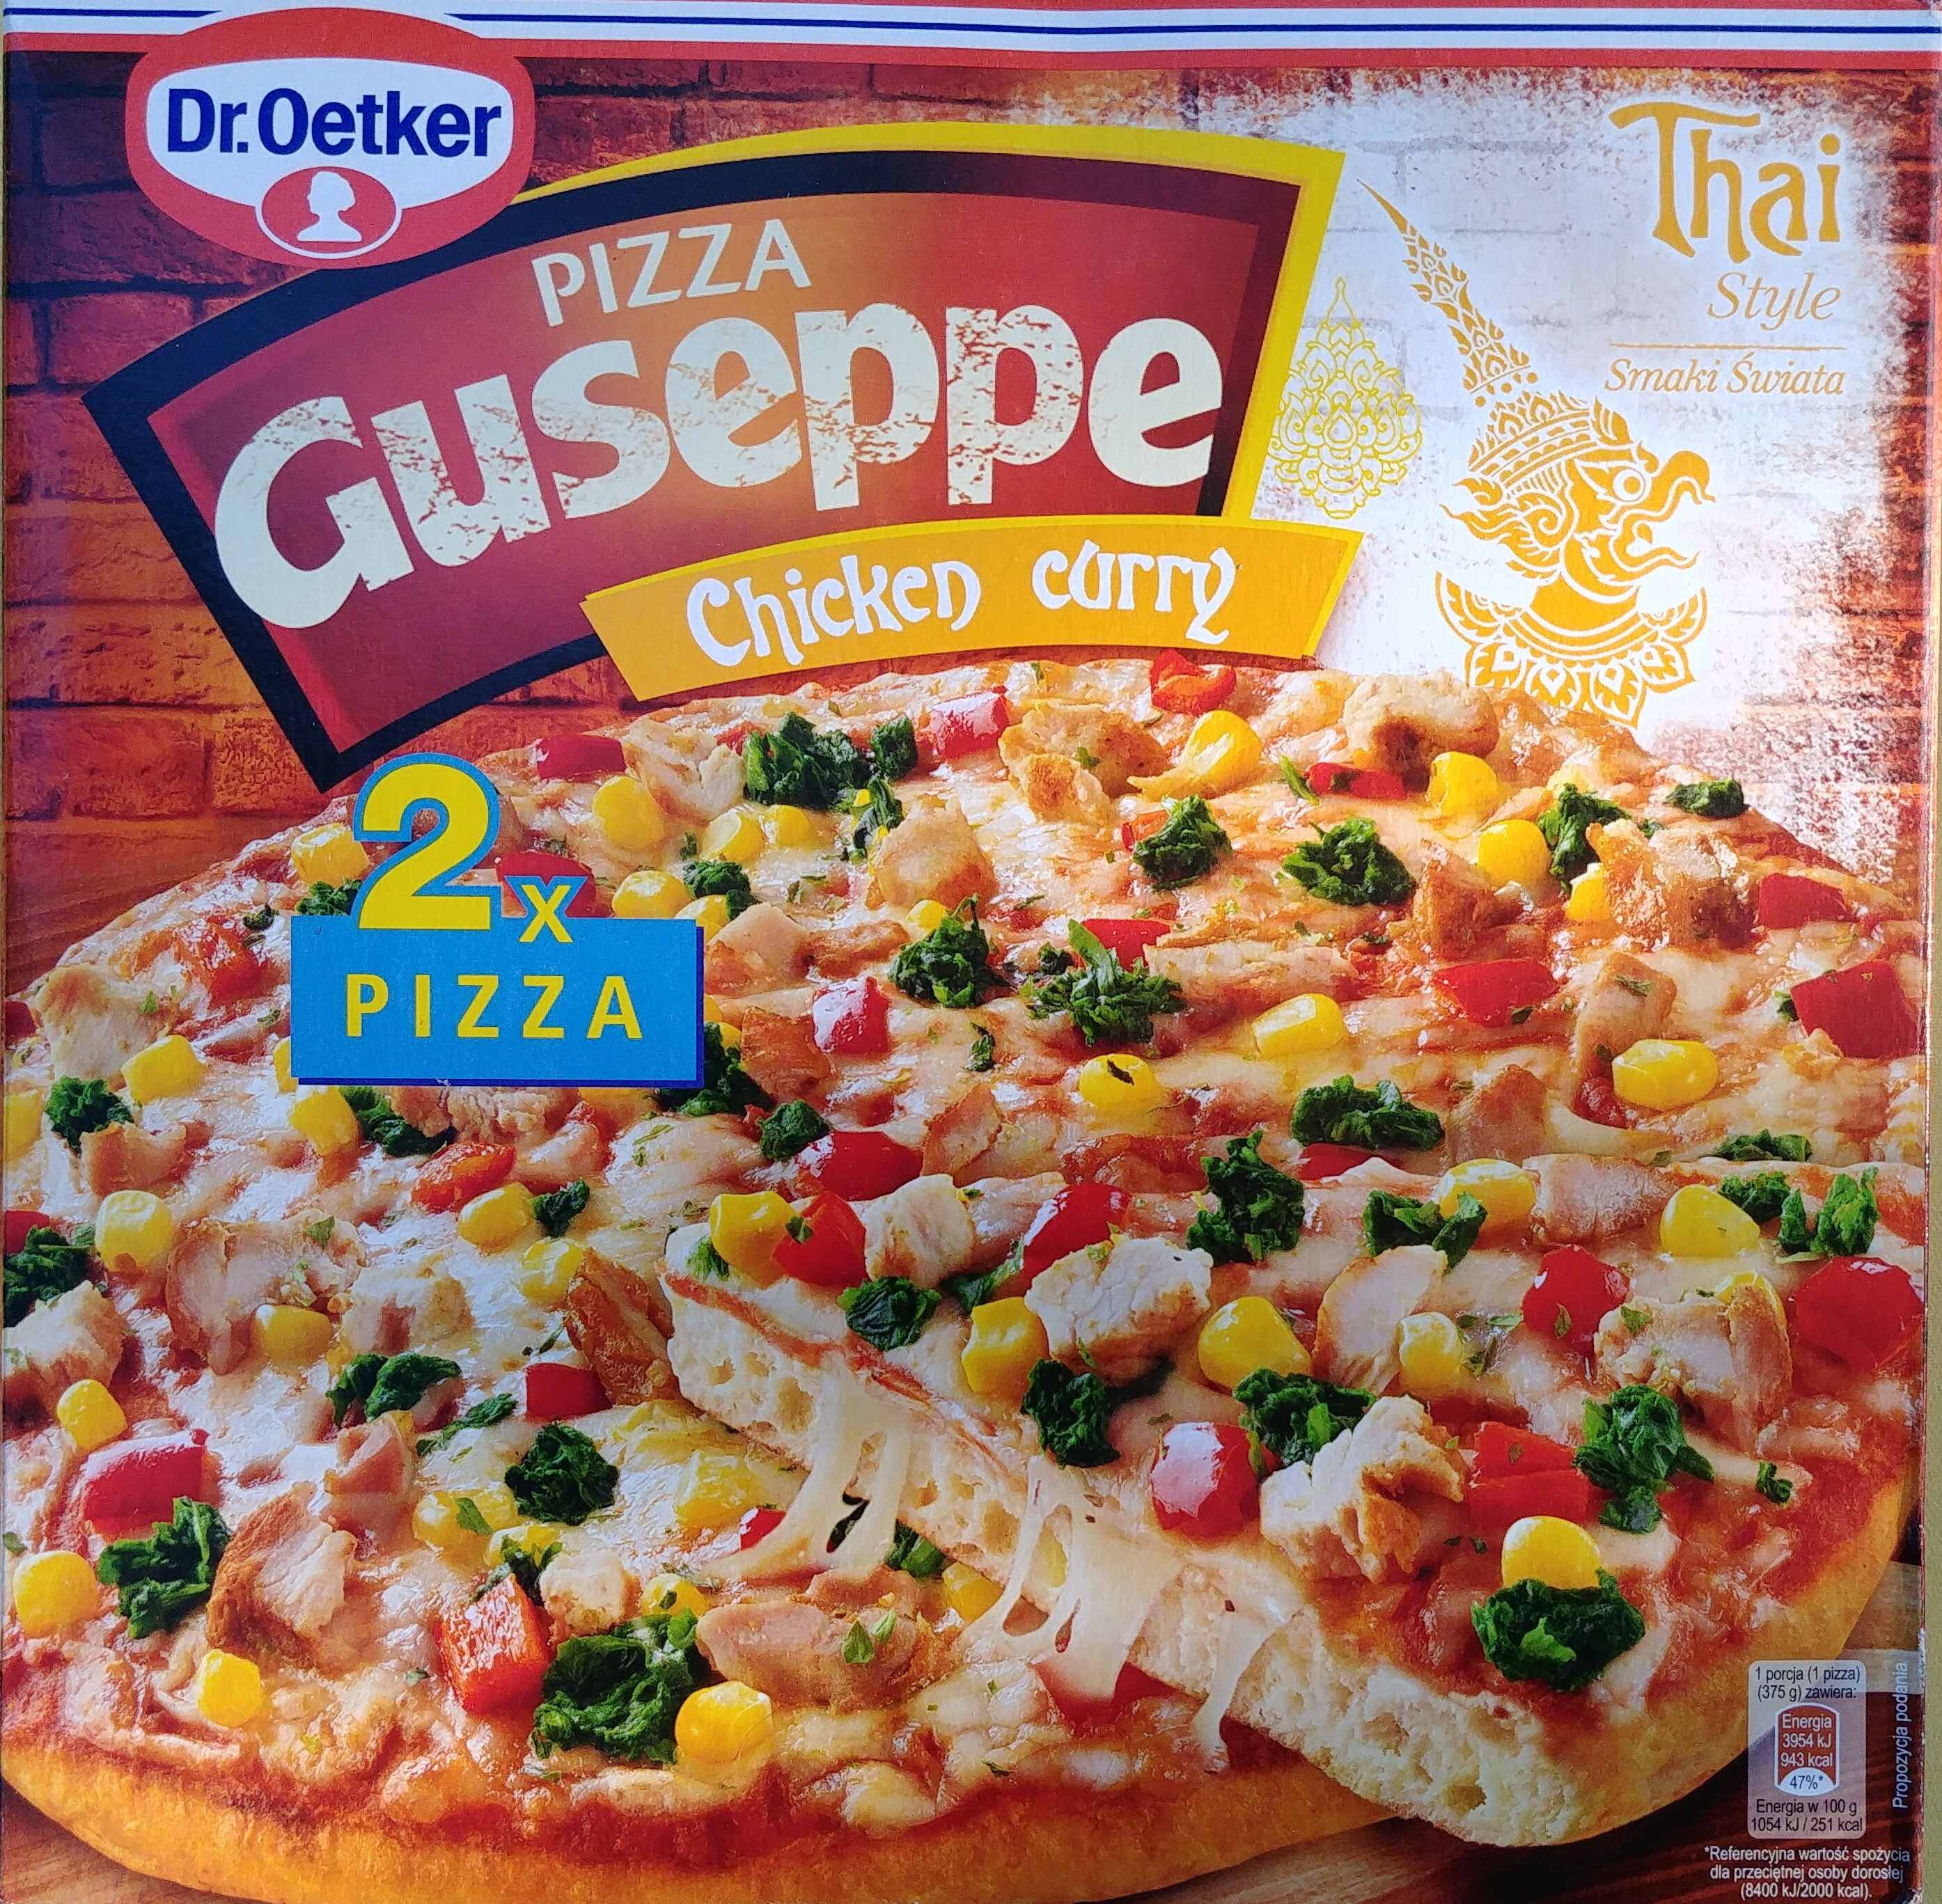 Pizza Guseppe z kurczakiem w przyprawie masala i curry, głęboko mrożona. - Product - pl